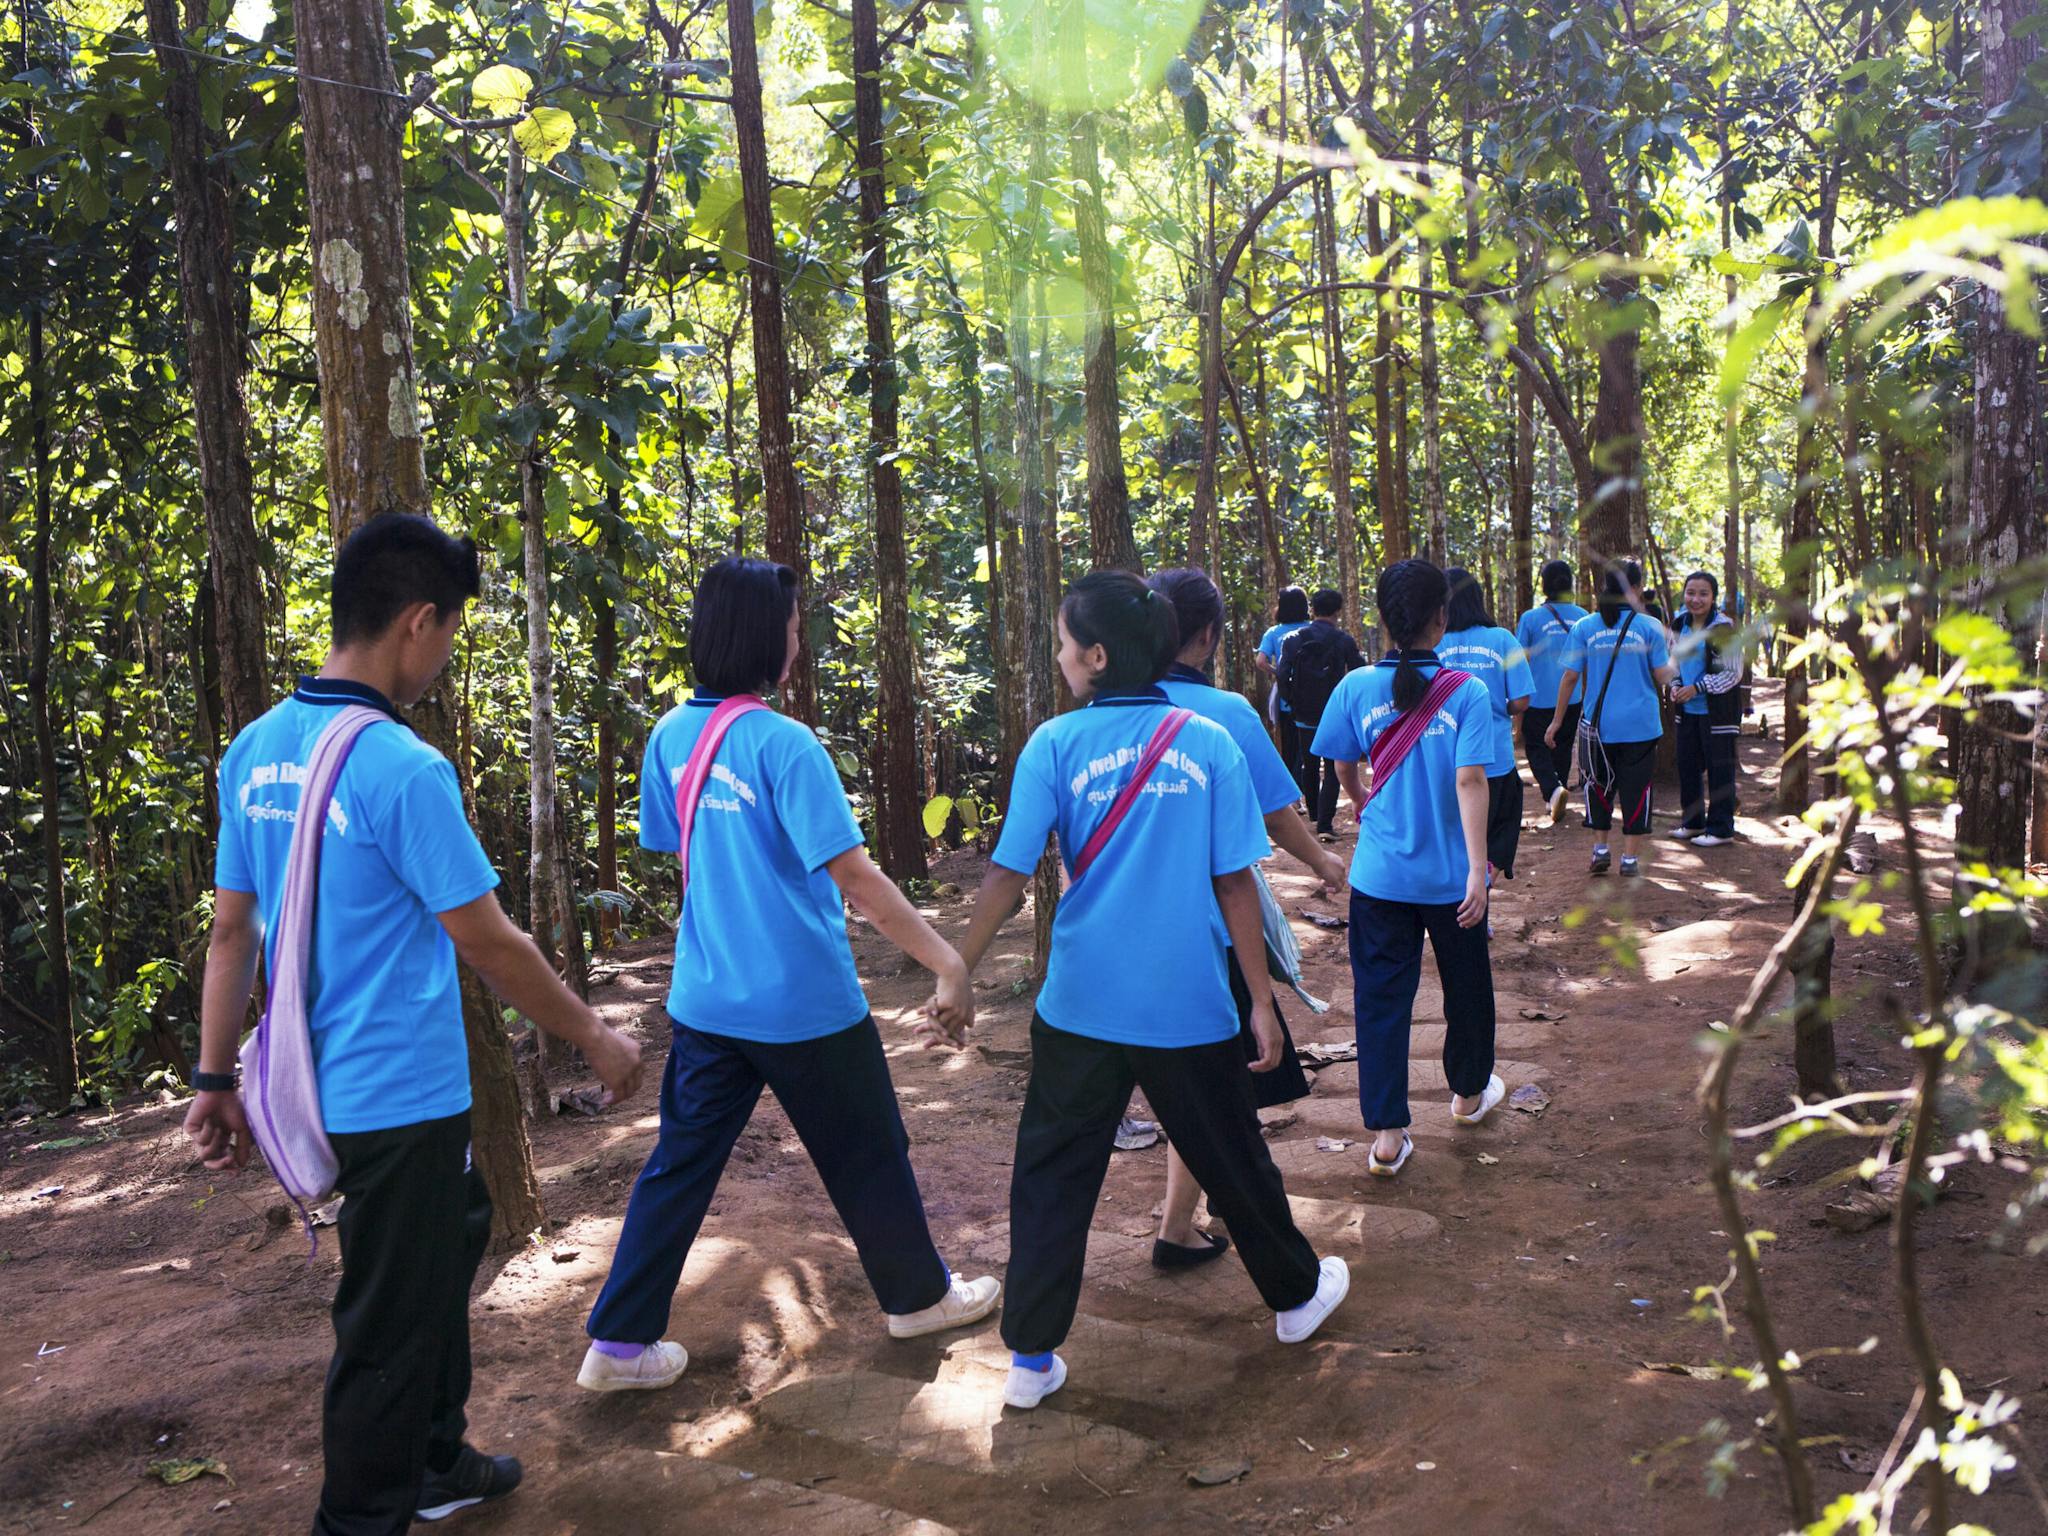 Flera människor i likadana ljusblåa t-shirts med text på ryggen går genom ett skogsområde, några håller varandra i handen.